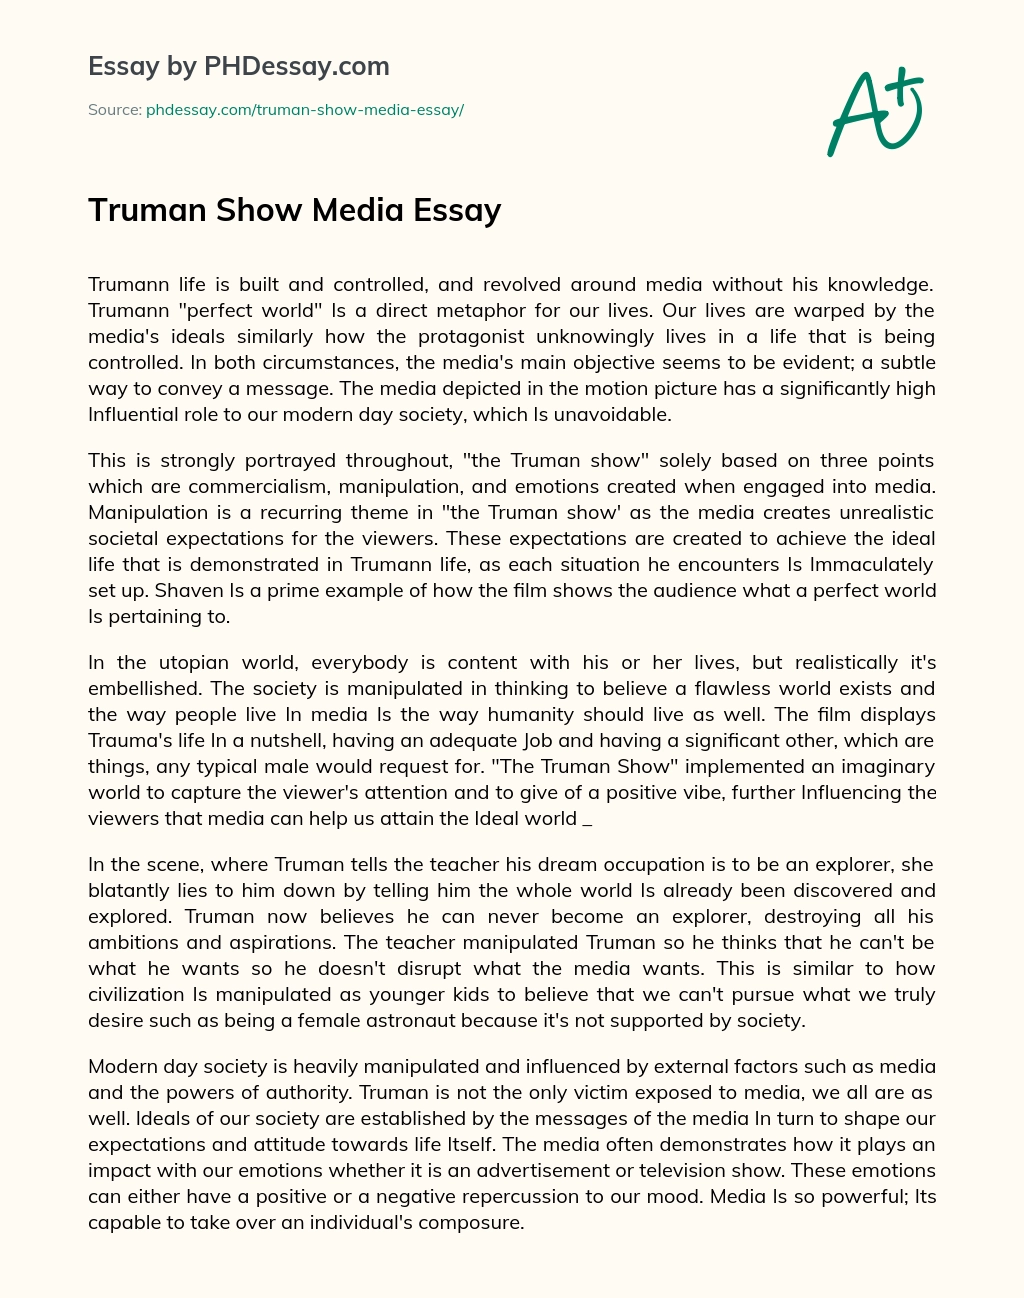 Truman Show Media Essay essay